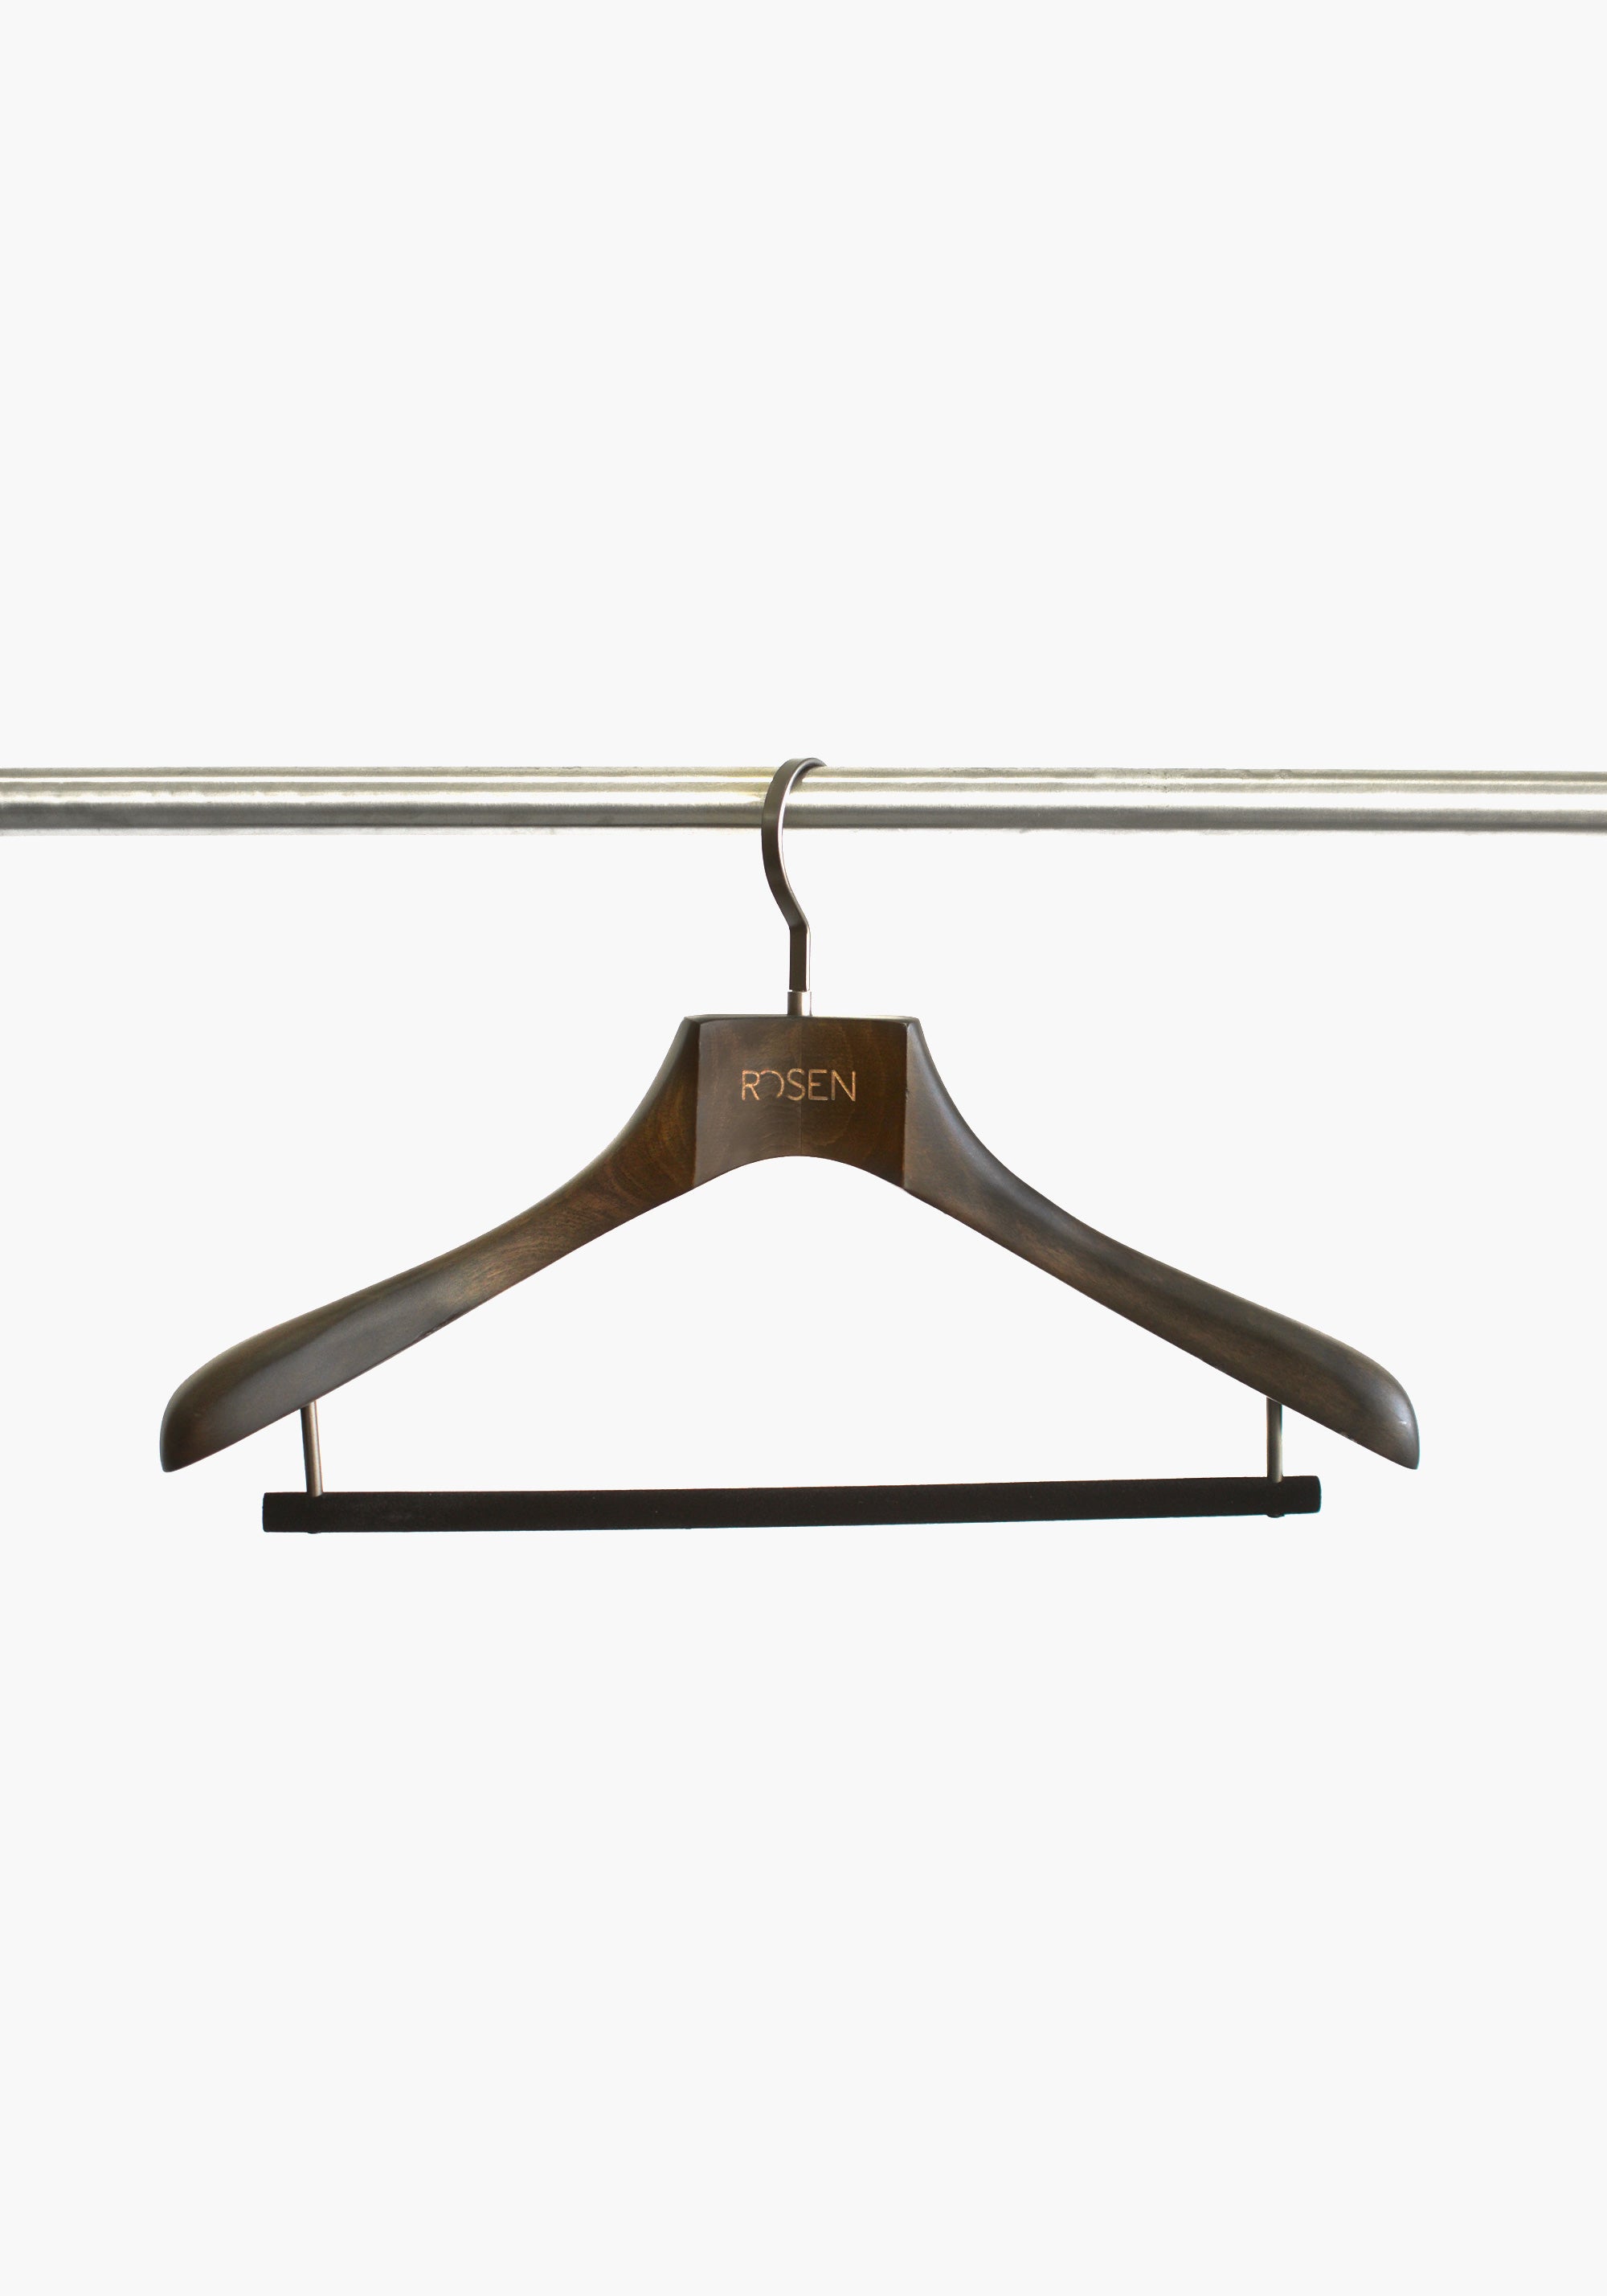 ROSEN Wood Garment Hangers